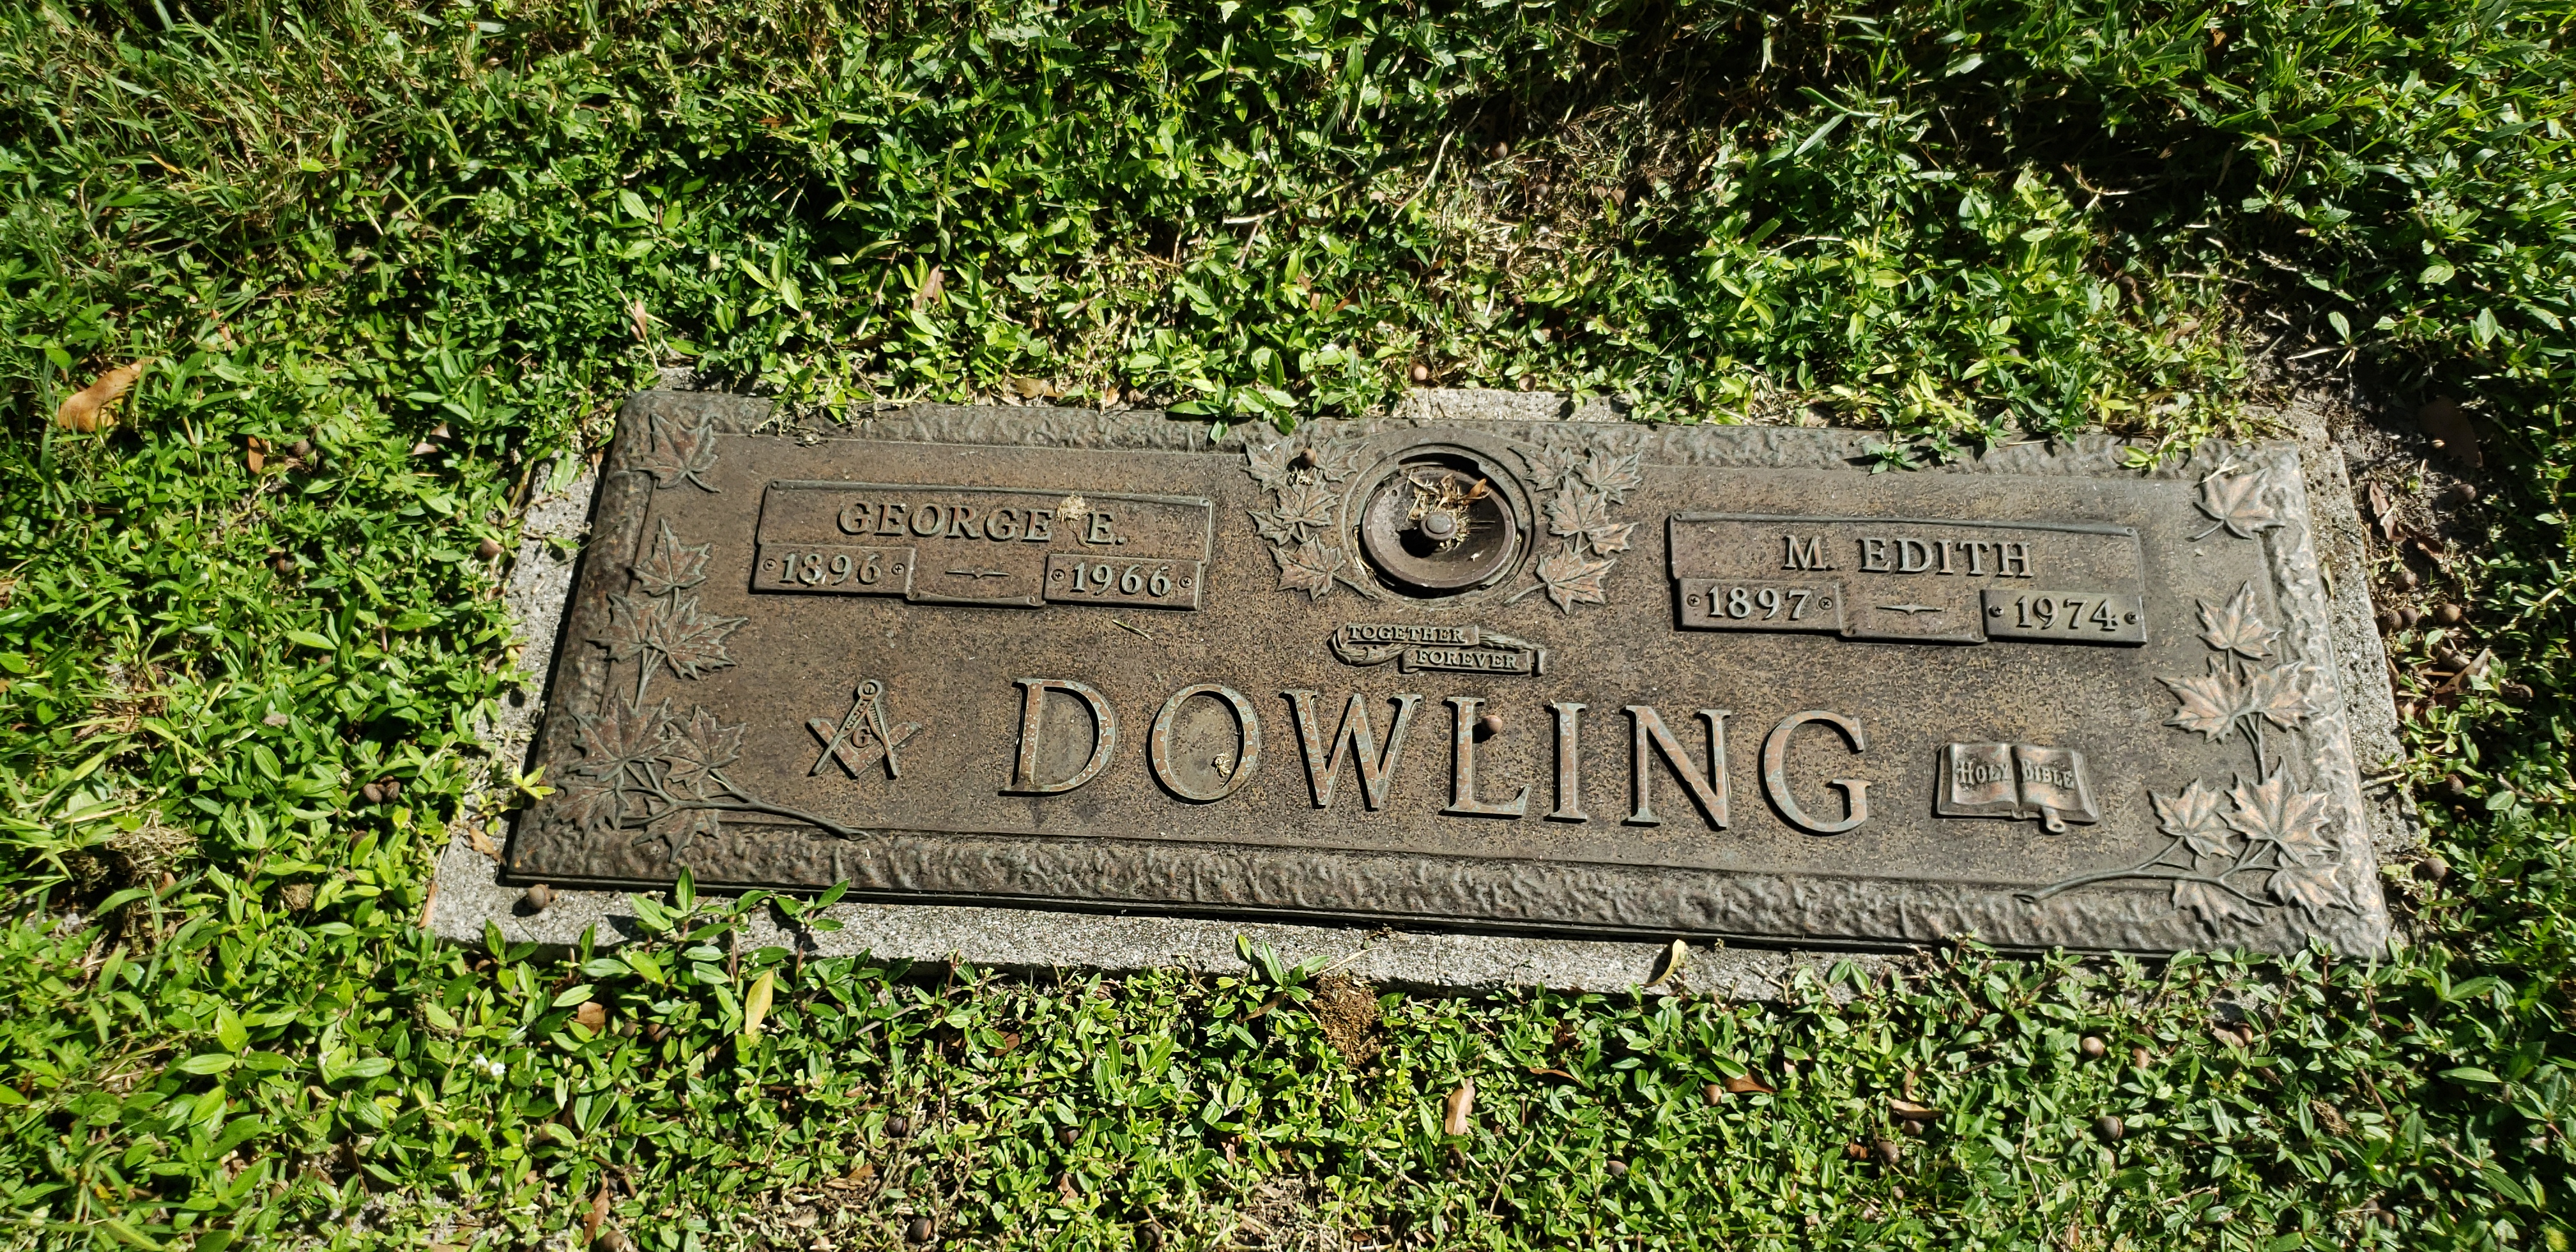 George E Dowling